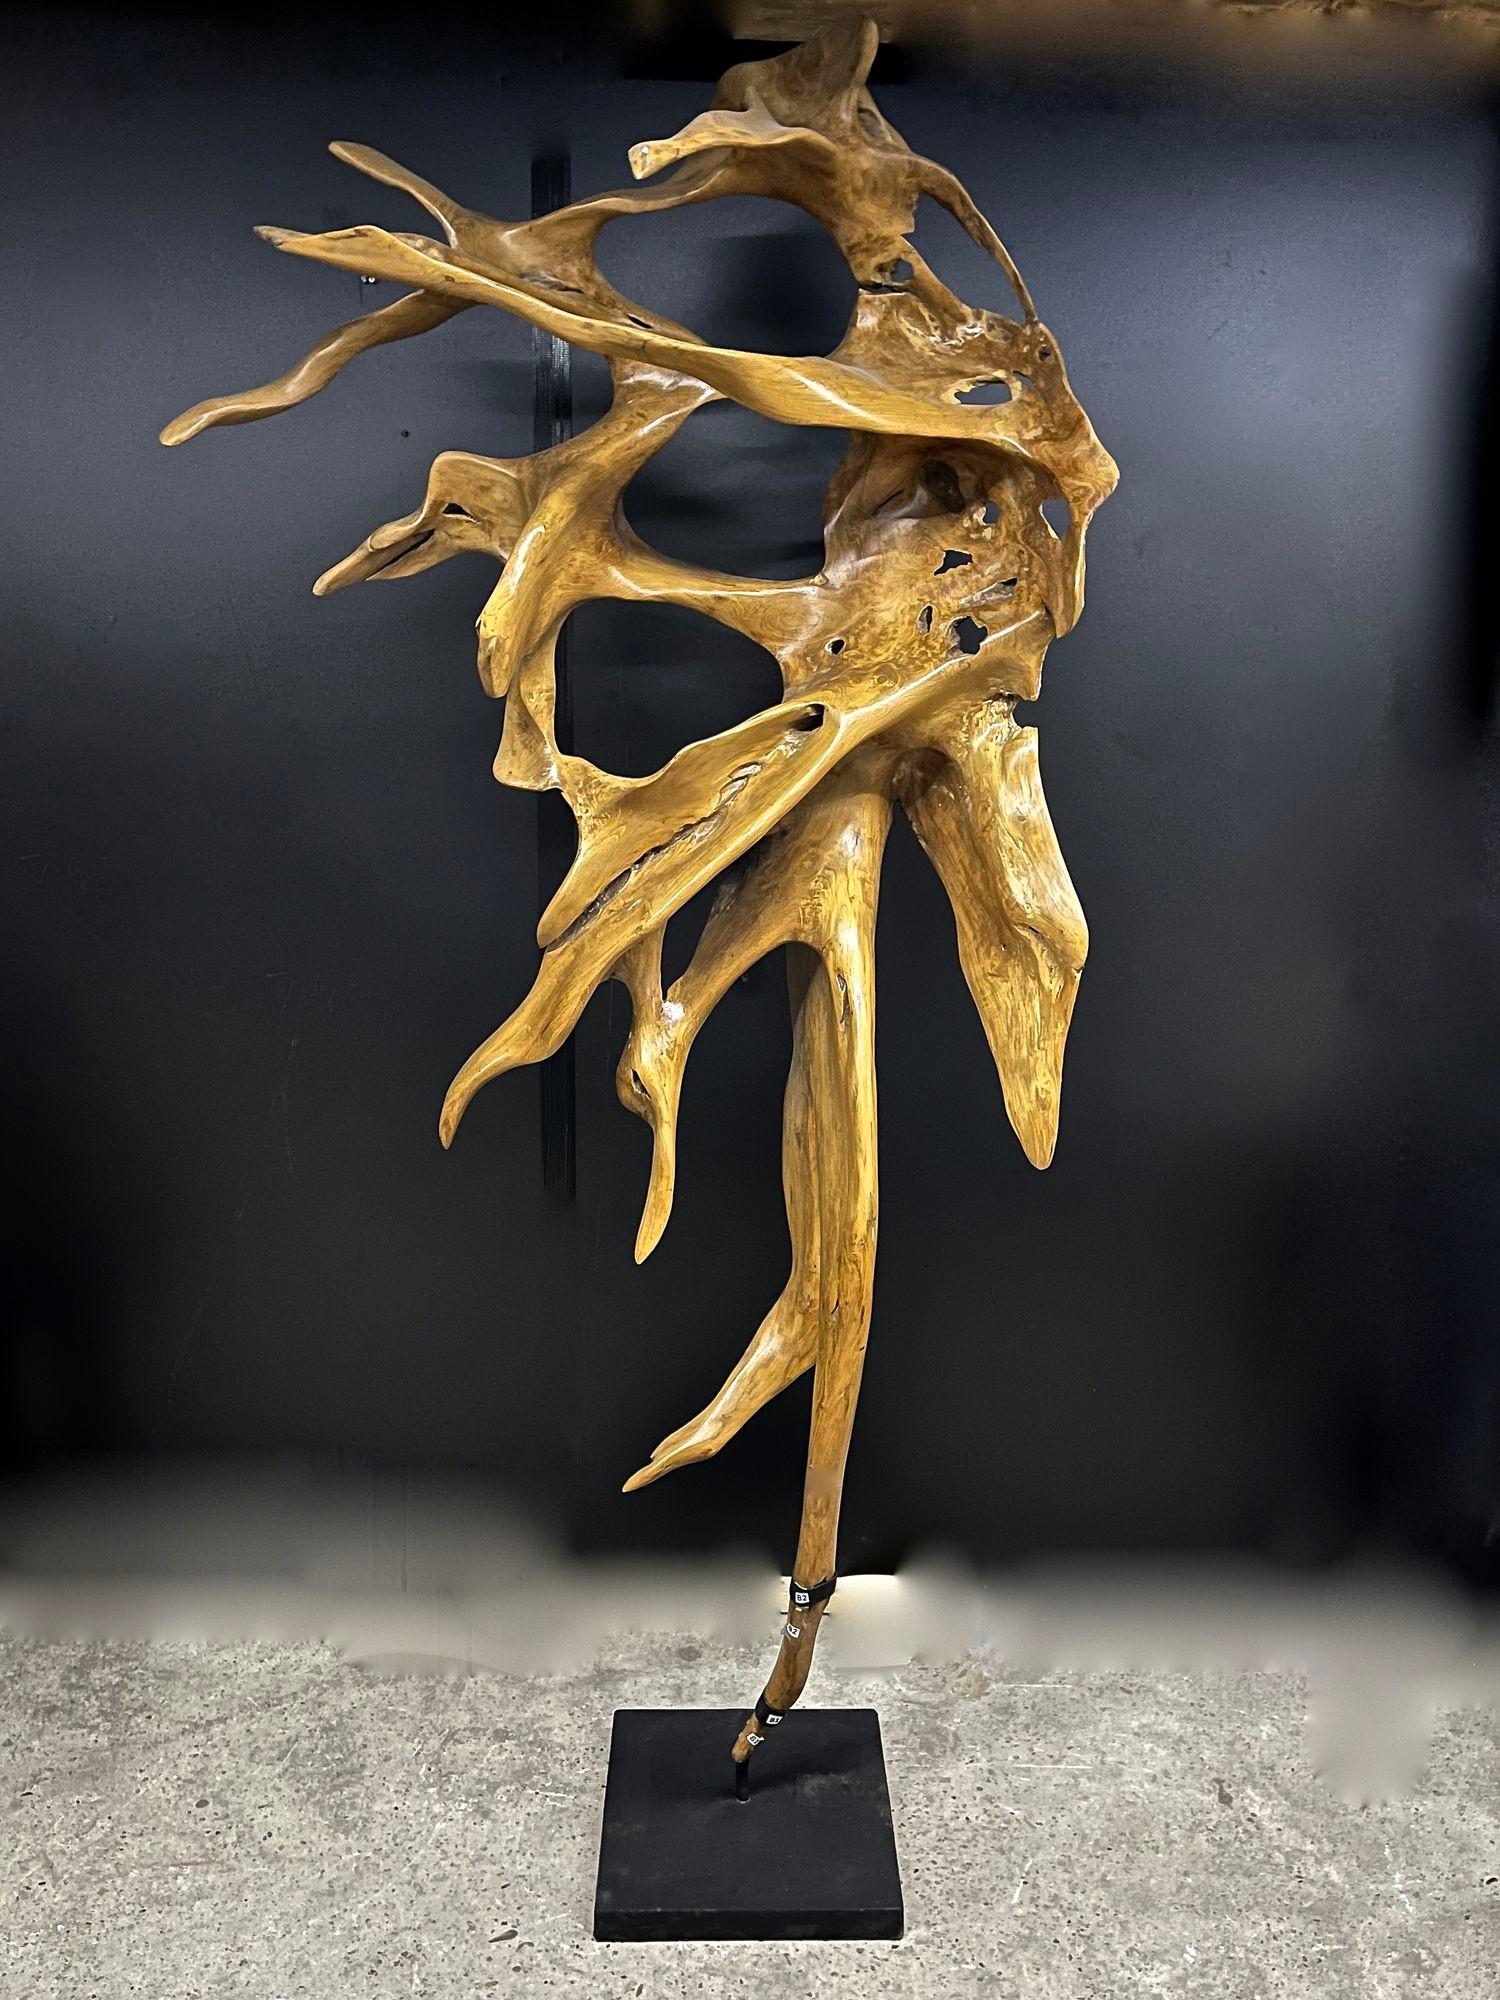 Einzigartige große organische Wurzelskulptur aus Mahagoni auf einem mattschwarzen Metallständer. Diese große abstrakte Holzskulptur wurde vom Künstler in Handarbeit aus einem massiven Mahagoniwurzelstück gefertigt und beeindruckt durch ihre